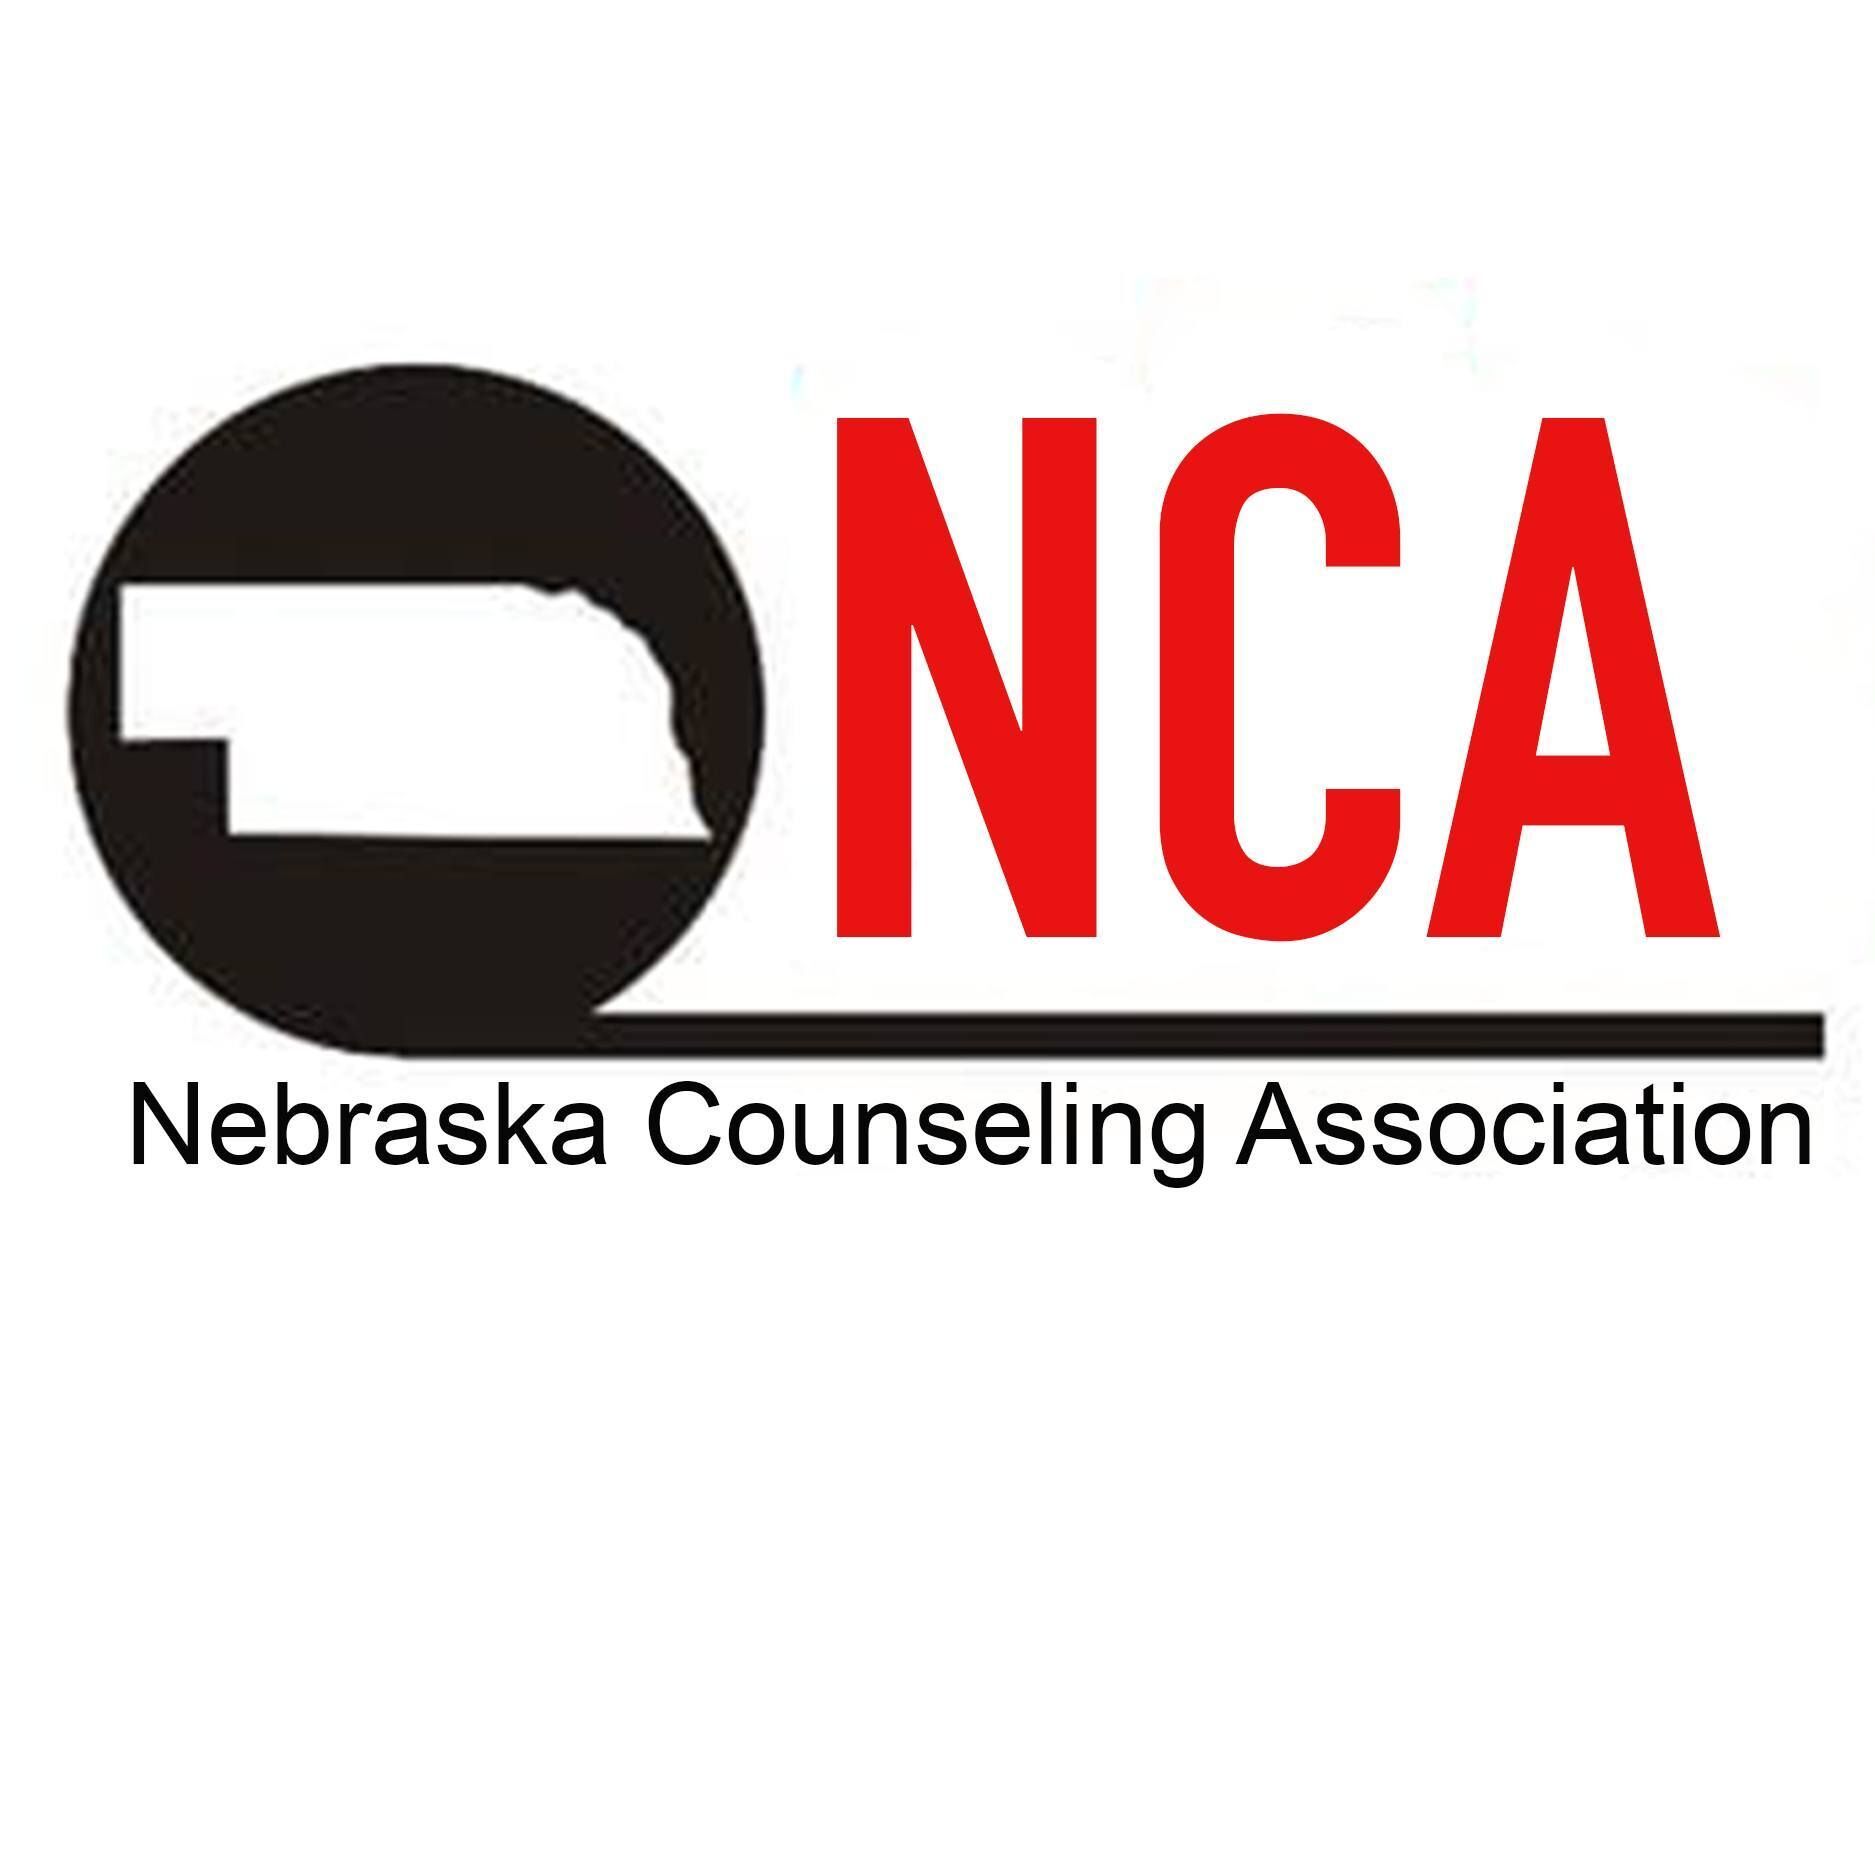 Nebraska Counseling Association